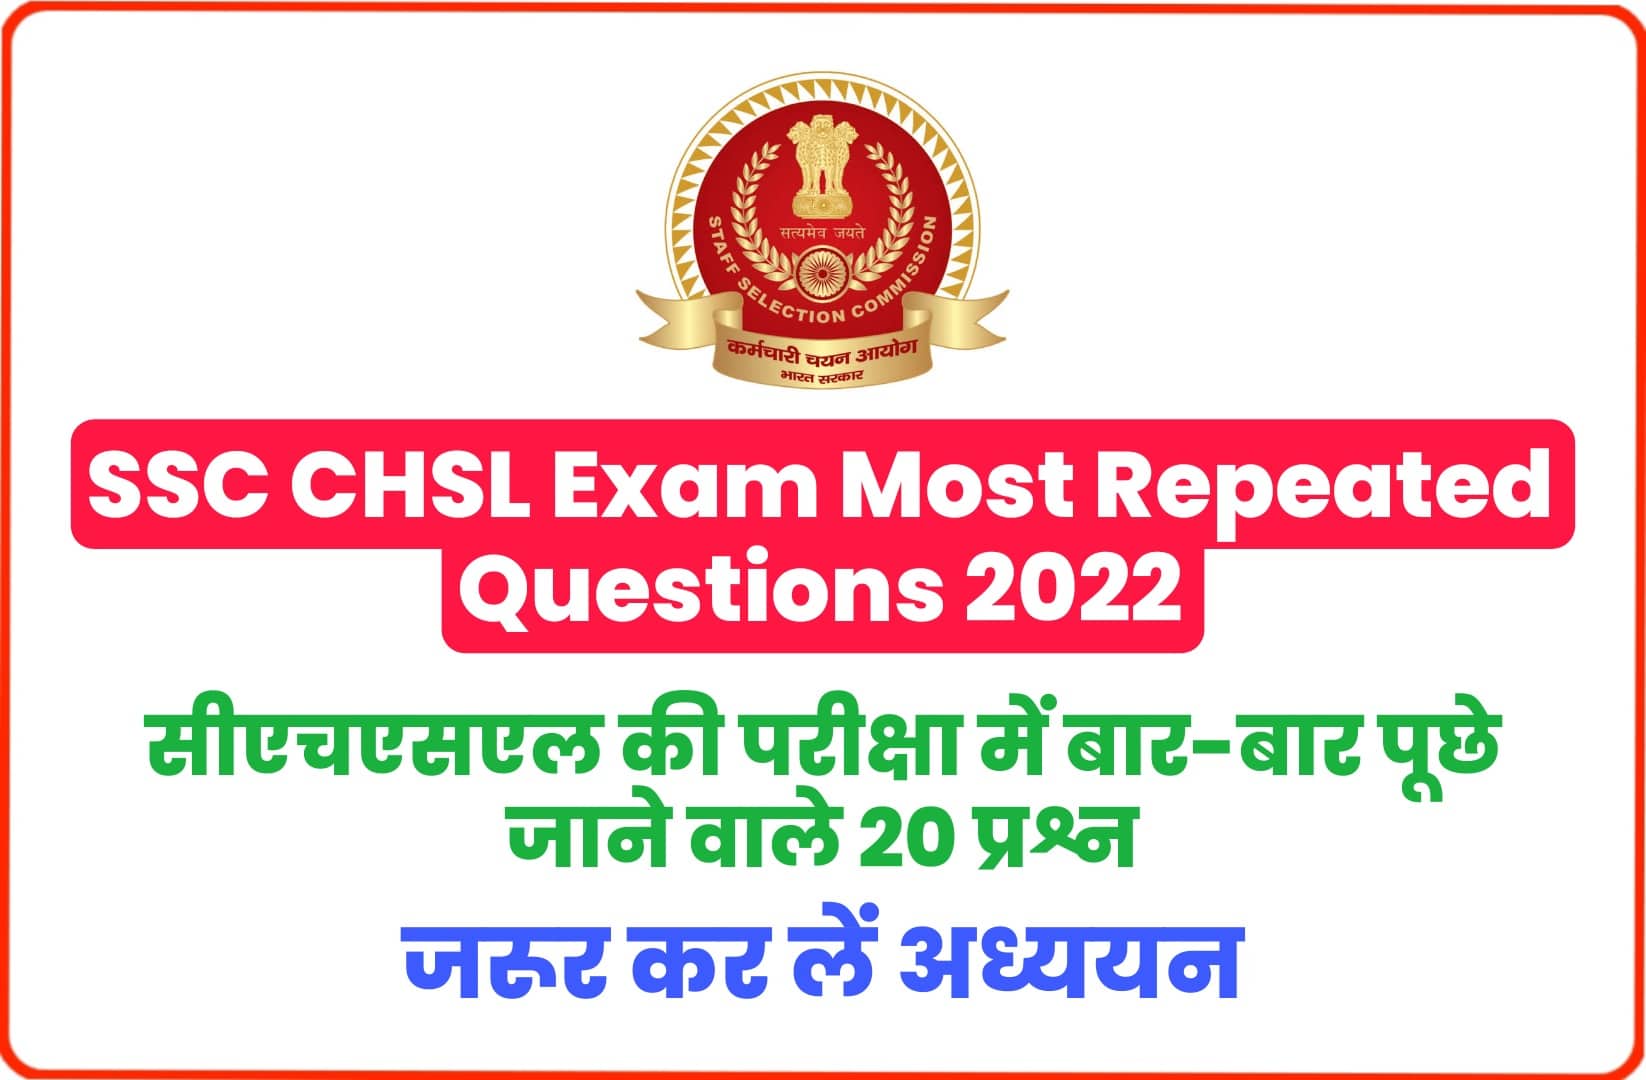 SSC CHSL Exam Most Repeated Questions 2022 : एसएससी सीएचएसएल परीक्षा में बार-बार पूछे जा चुके हैं ये प्रश्न, परीक्षा से पहले जरूर पढ़ें